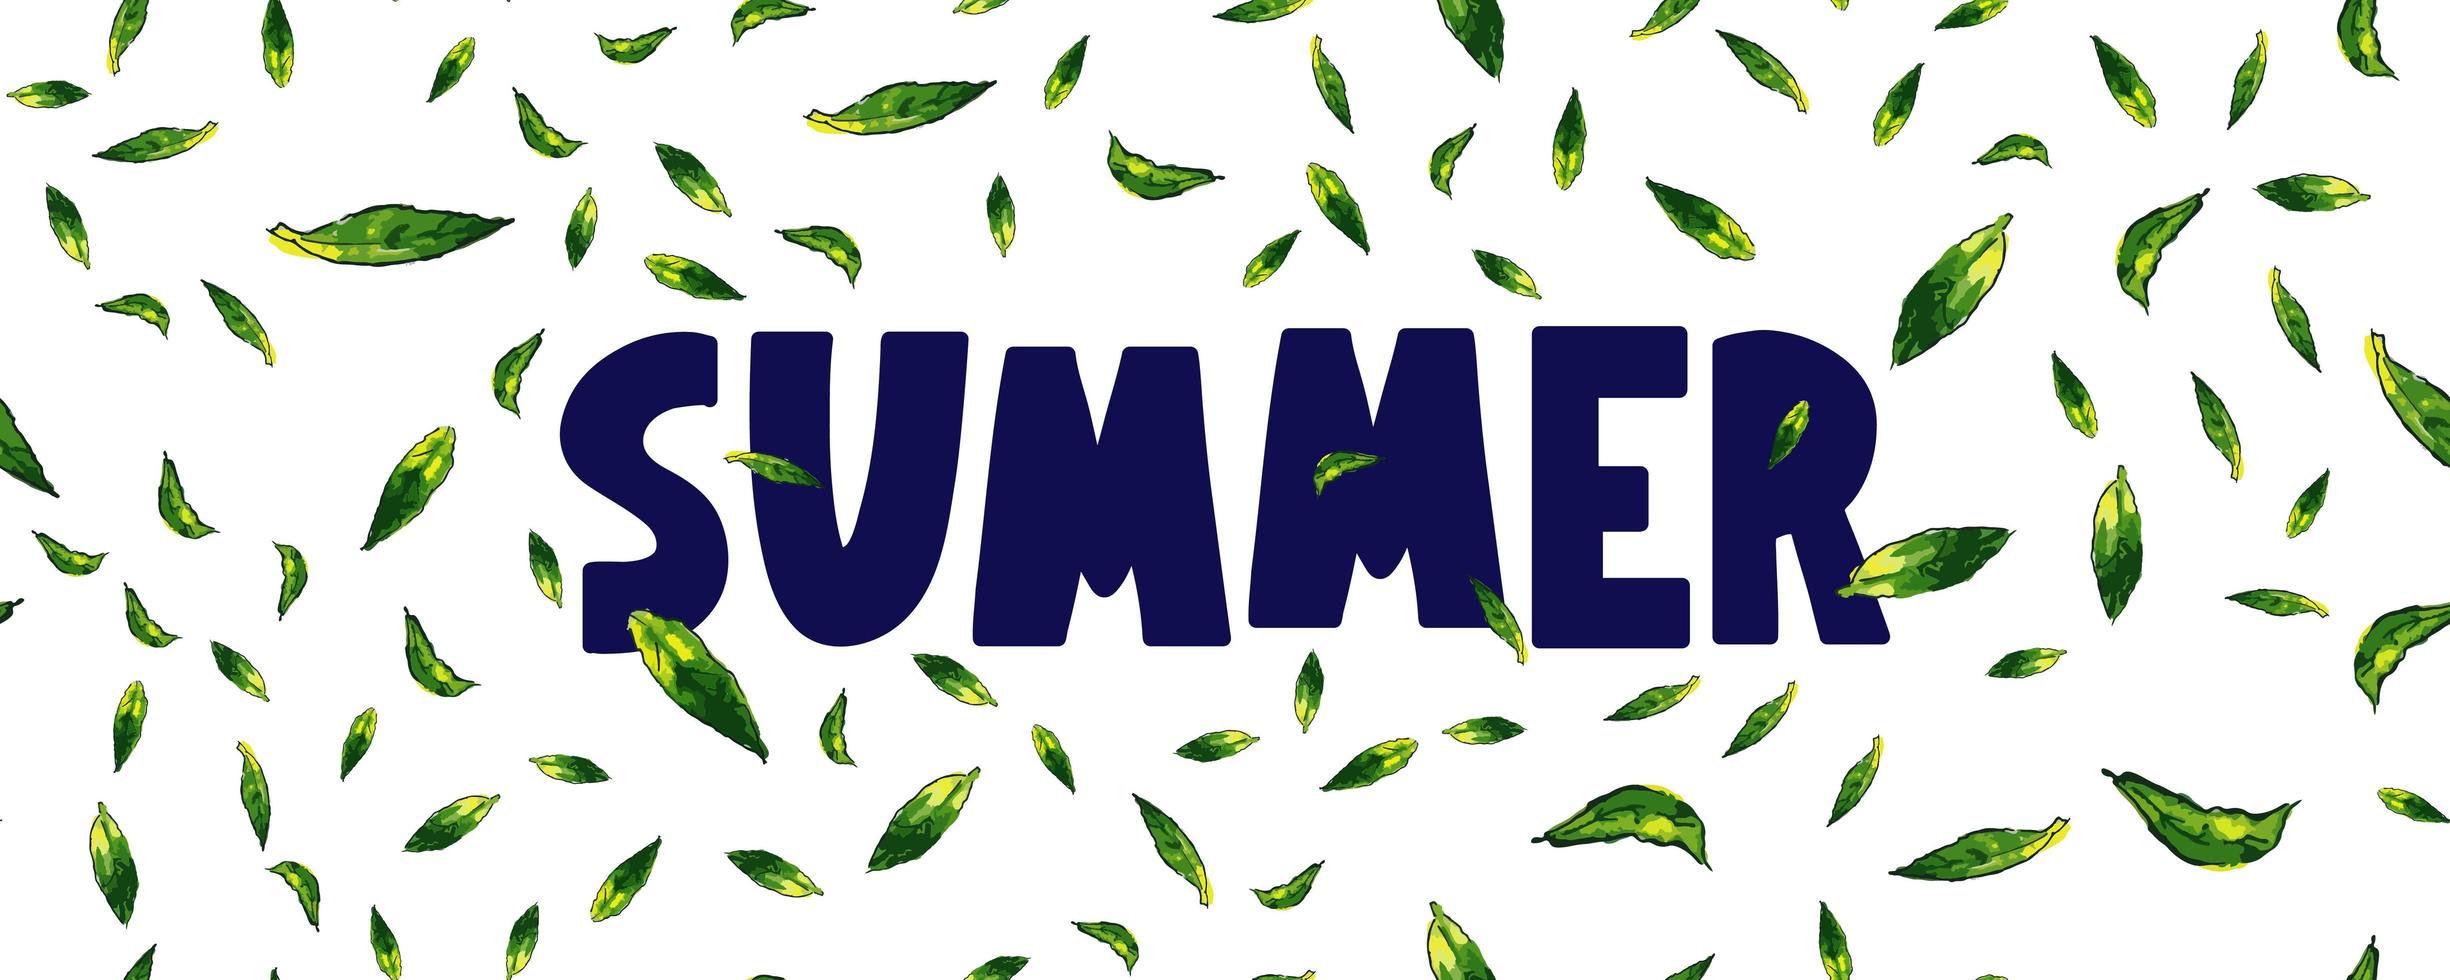 Banner de venta de verano con vector de letra de hojas